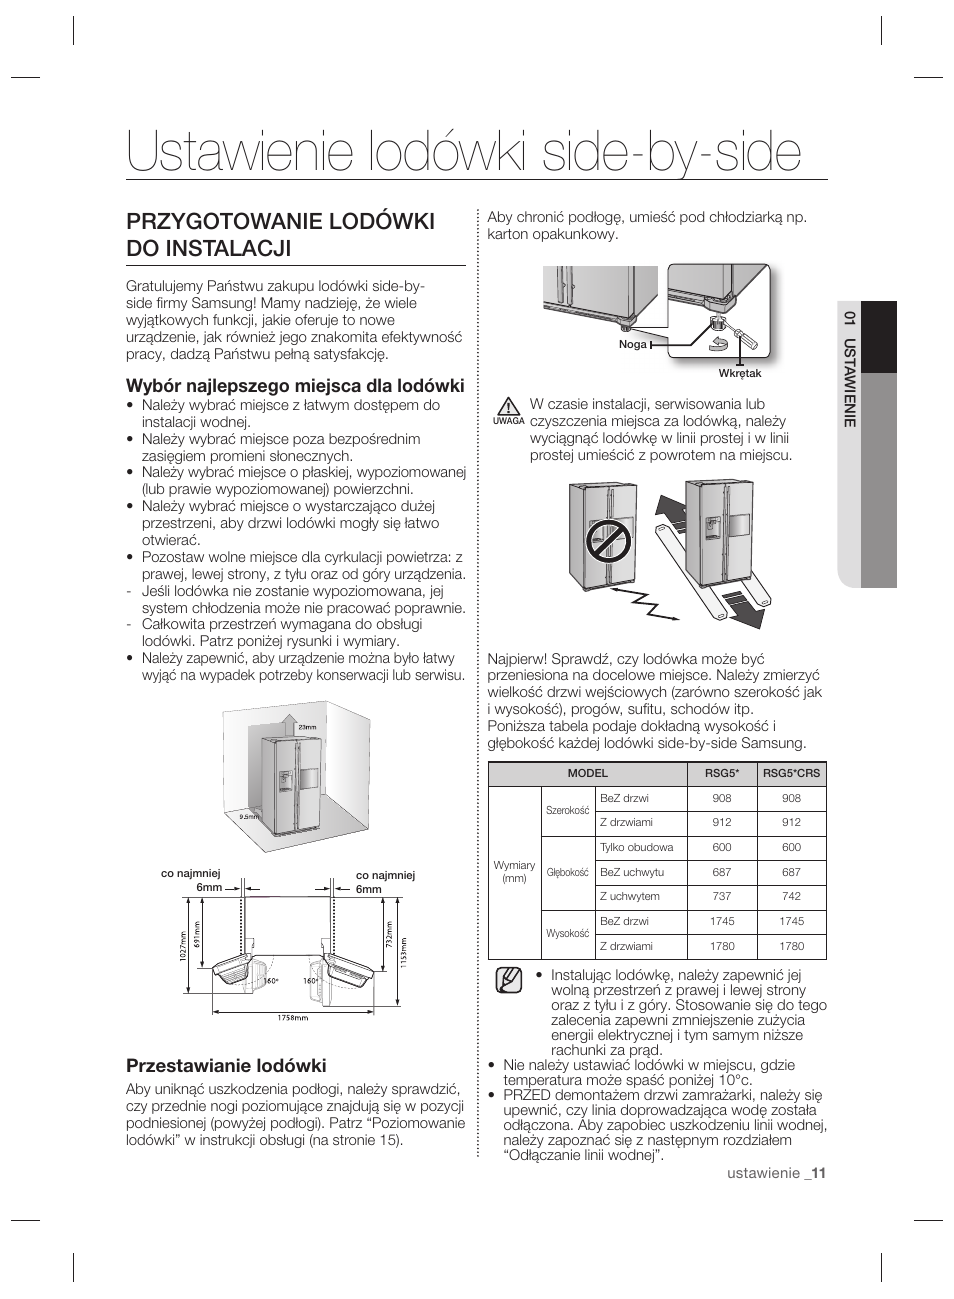 Ustawienie lodówki side-by-side, Przygotowanie lodówki do instalacji, Wybór  najlepszego miejsca dla lodówki | Samsung RSG5PURS User Manual | Page 37 /  132